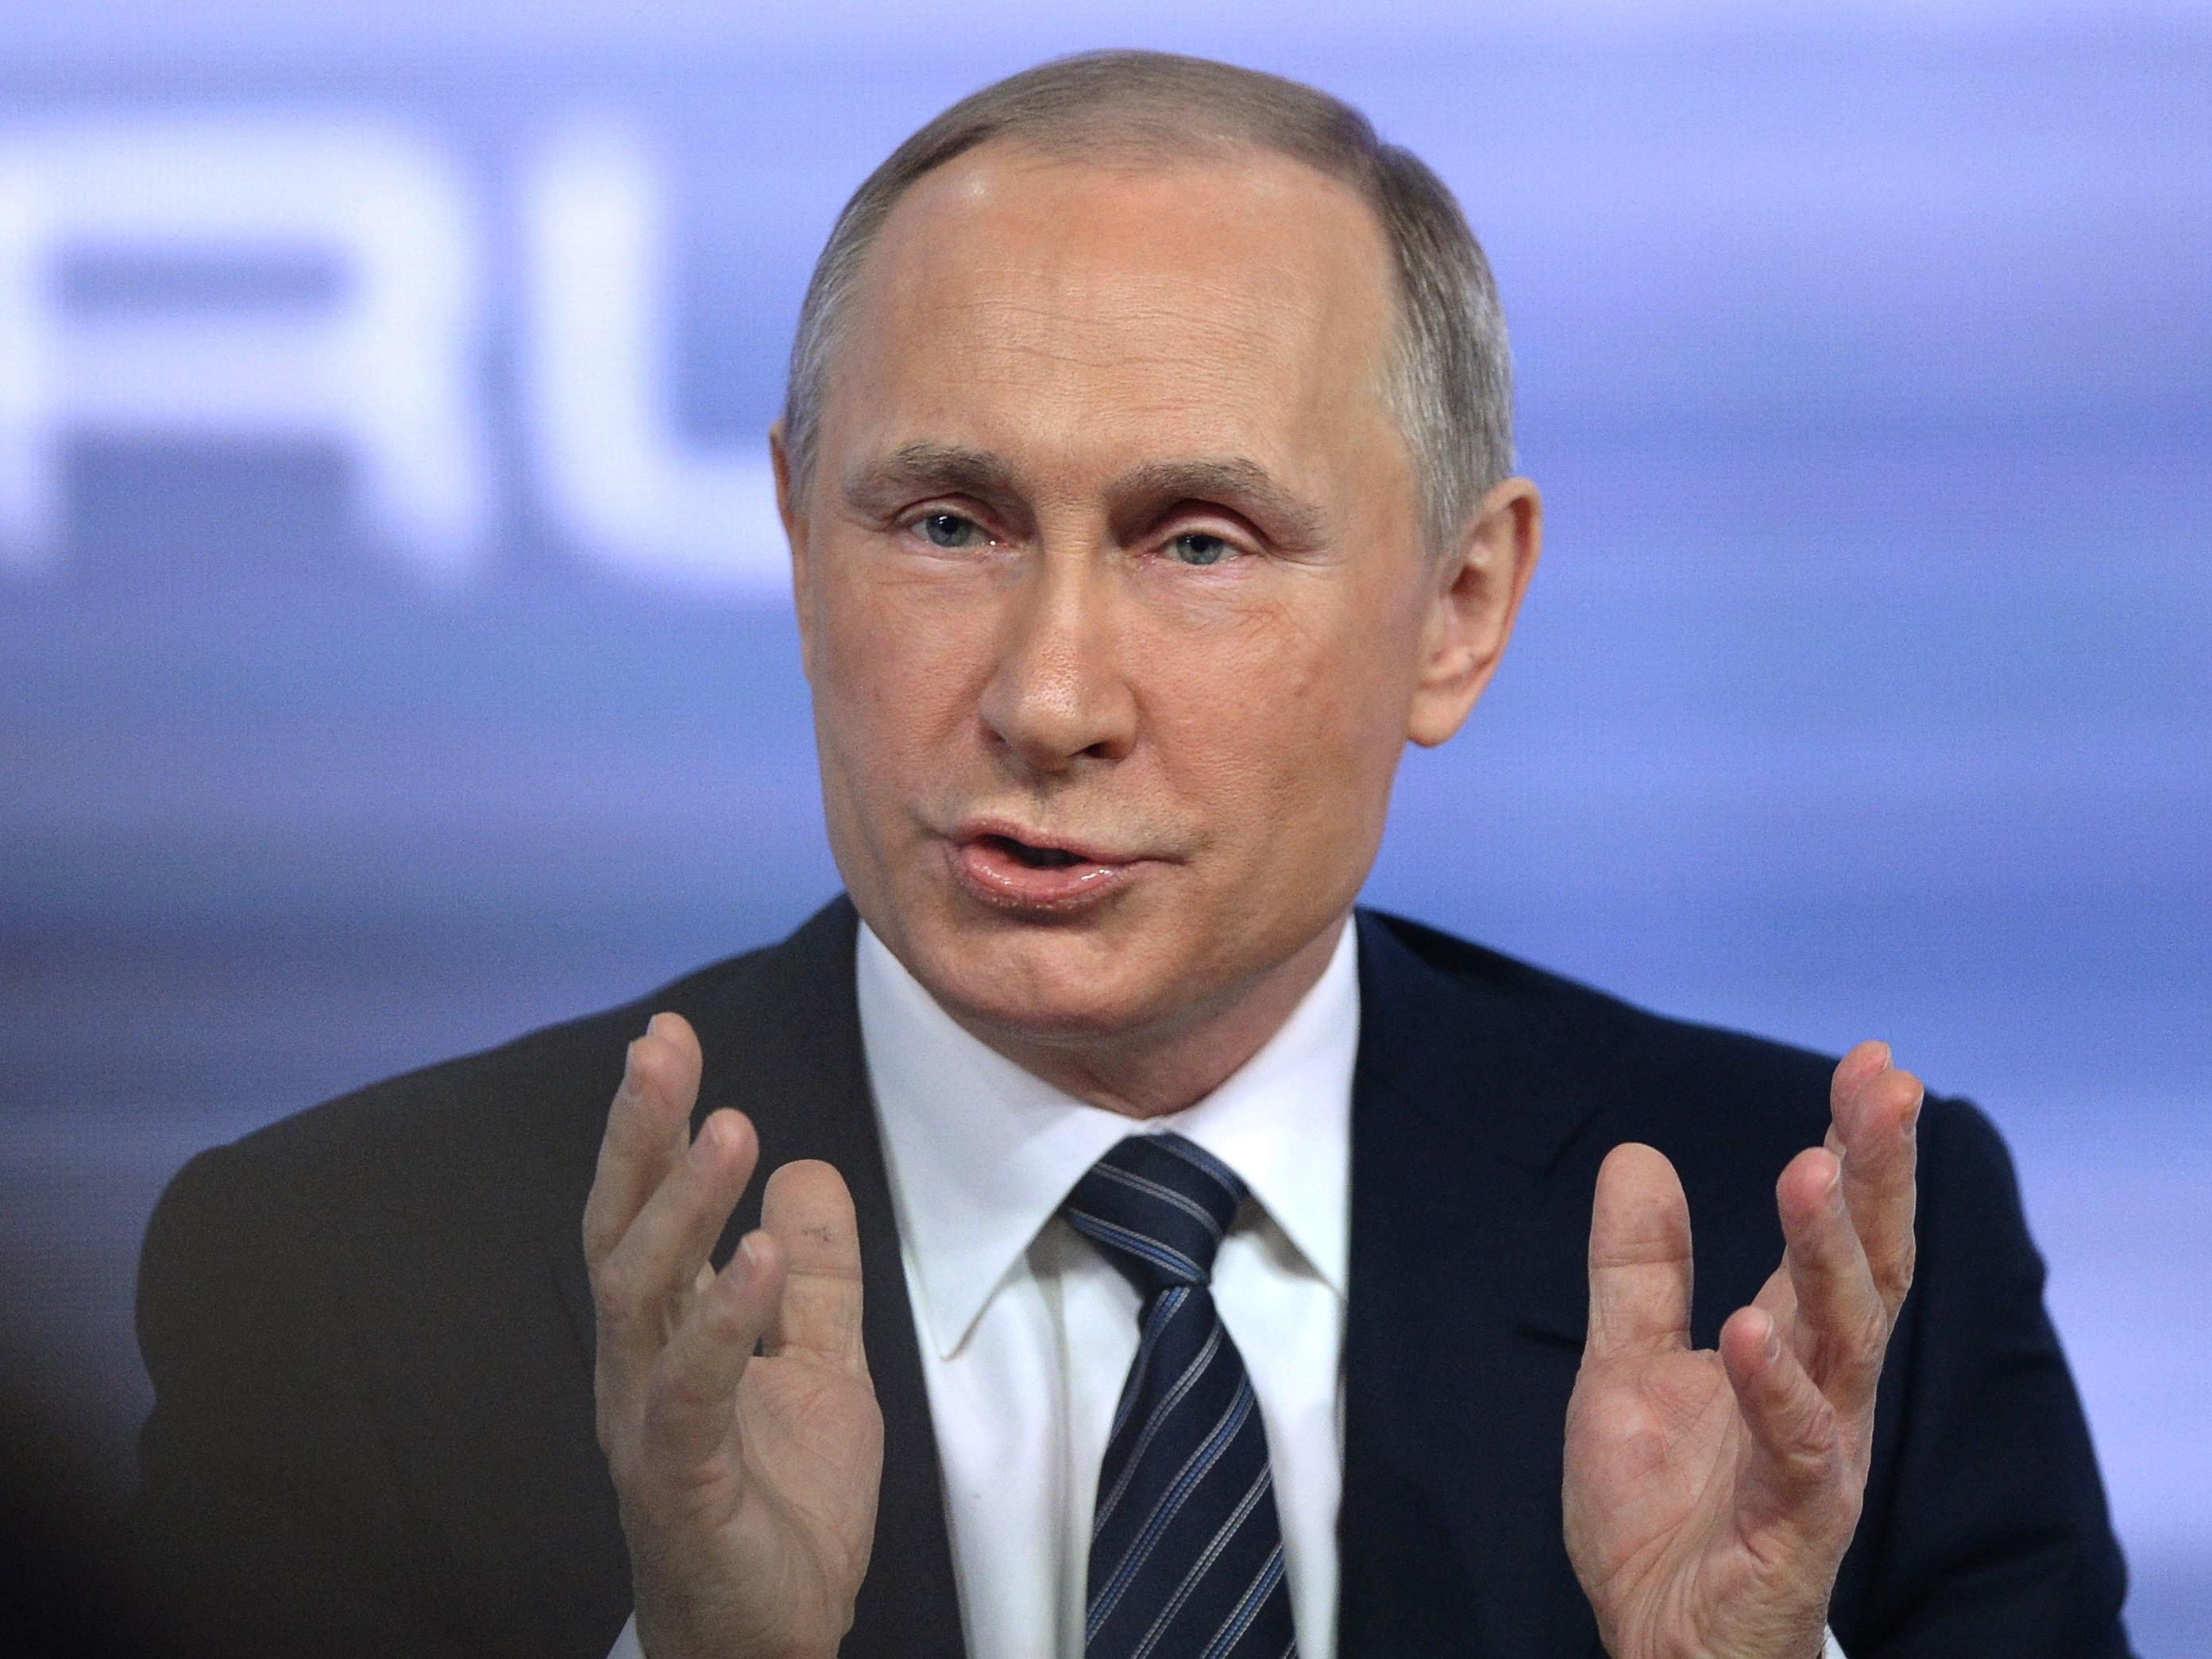 Kritik an seinem Vorgehen wies Putin zurück.